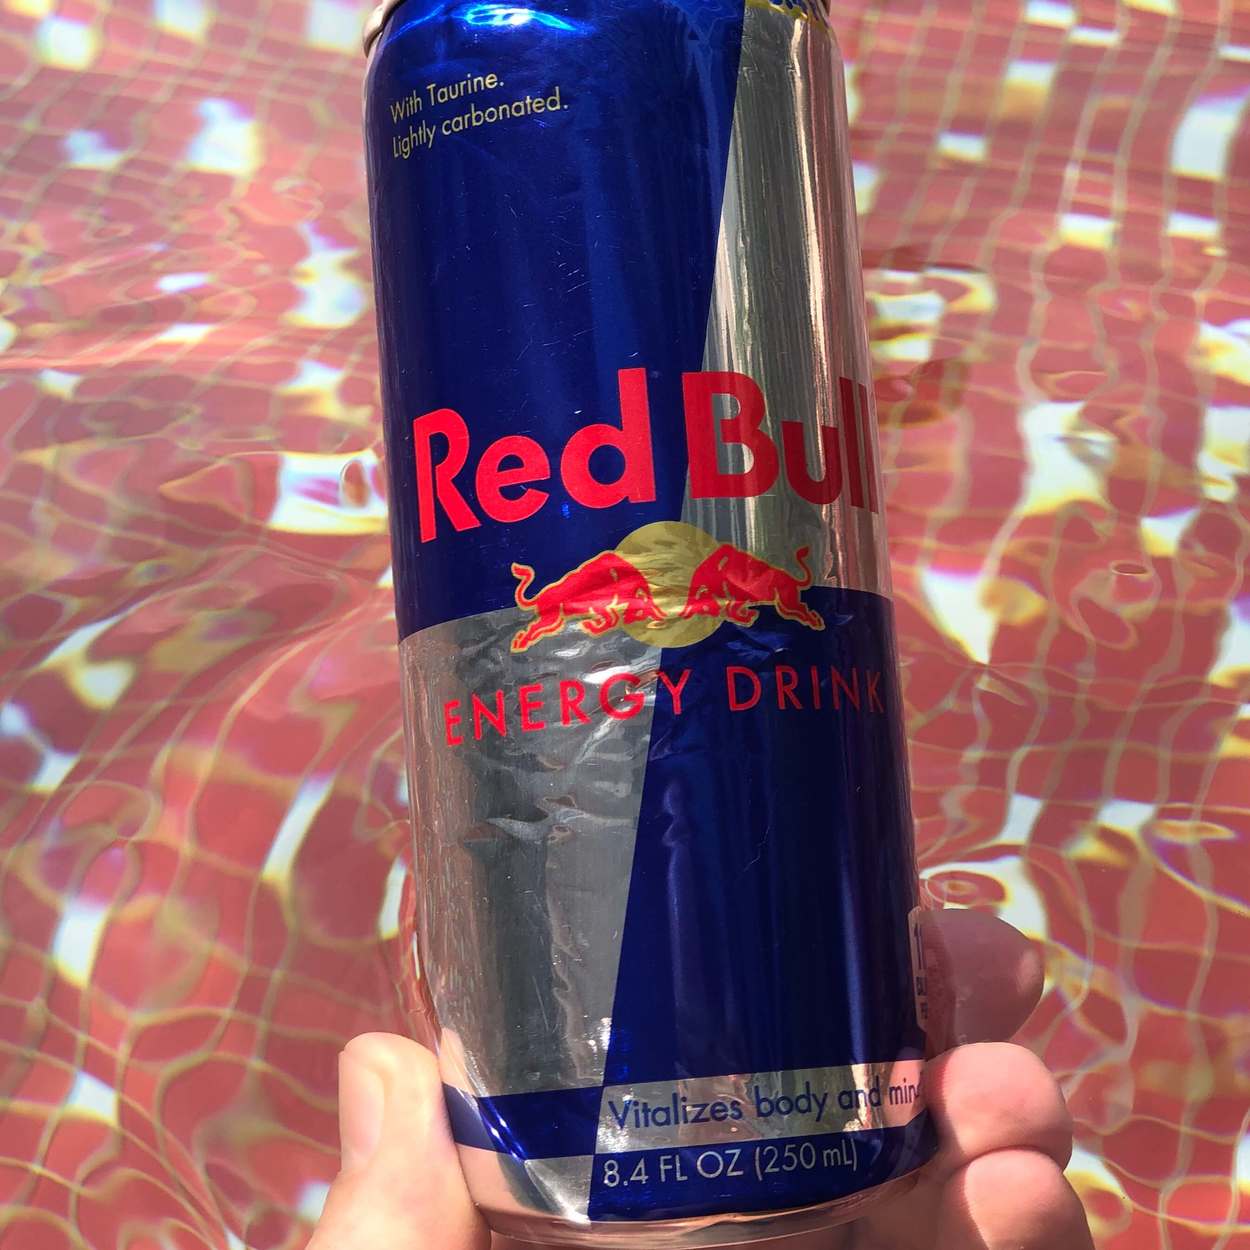 An 8.4 fluid ounce can of Red Bull energy drink